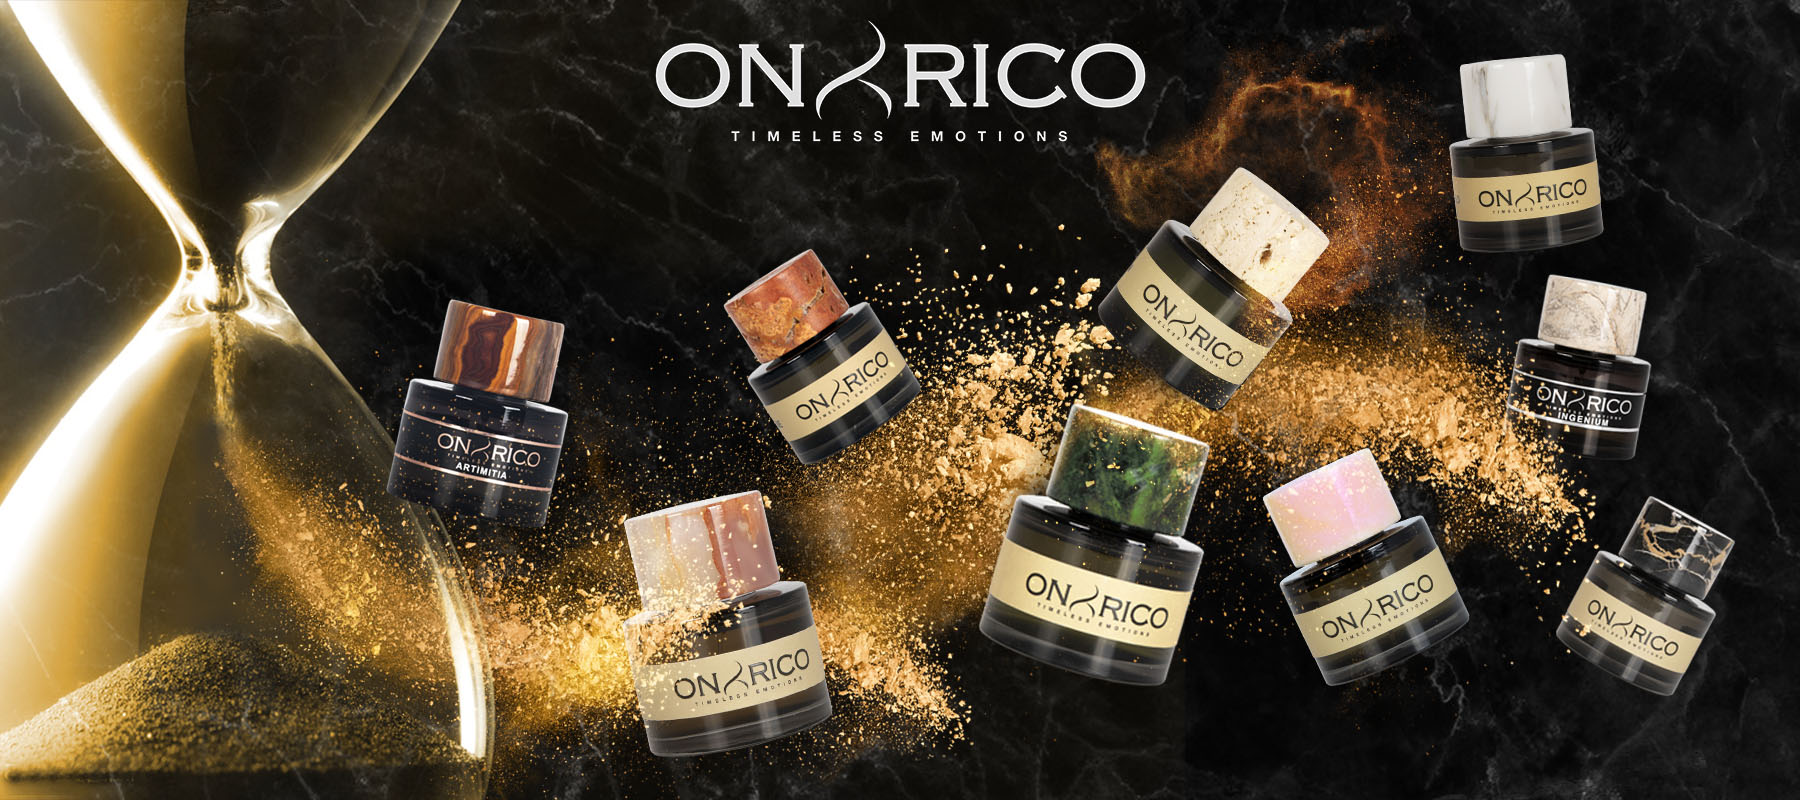 onyrico perfume